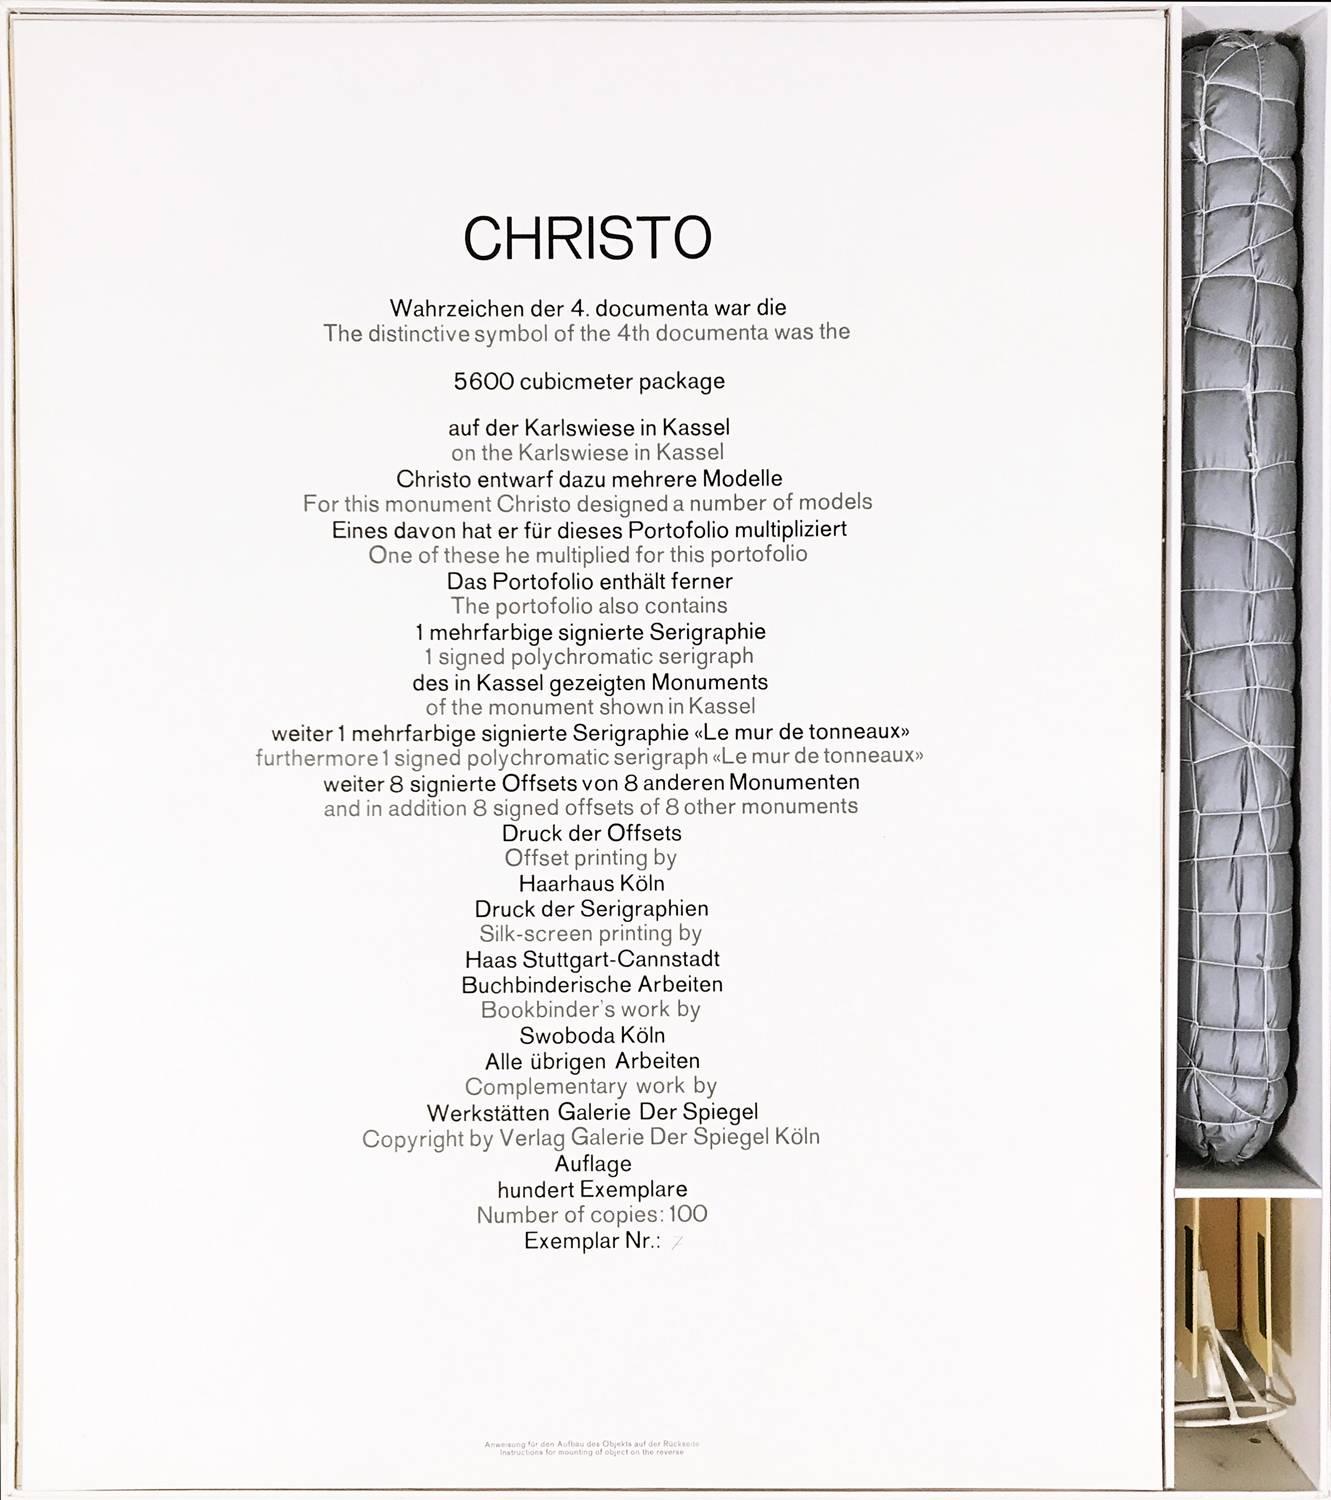 Portefeuille de Christo composé de 10 gravures et d'un modèle réduit de la sculpture 